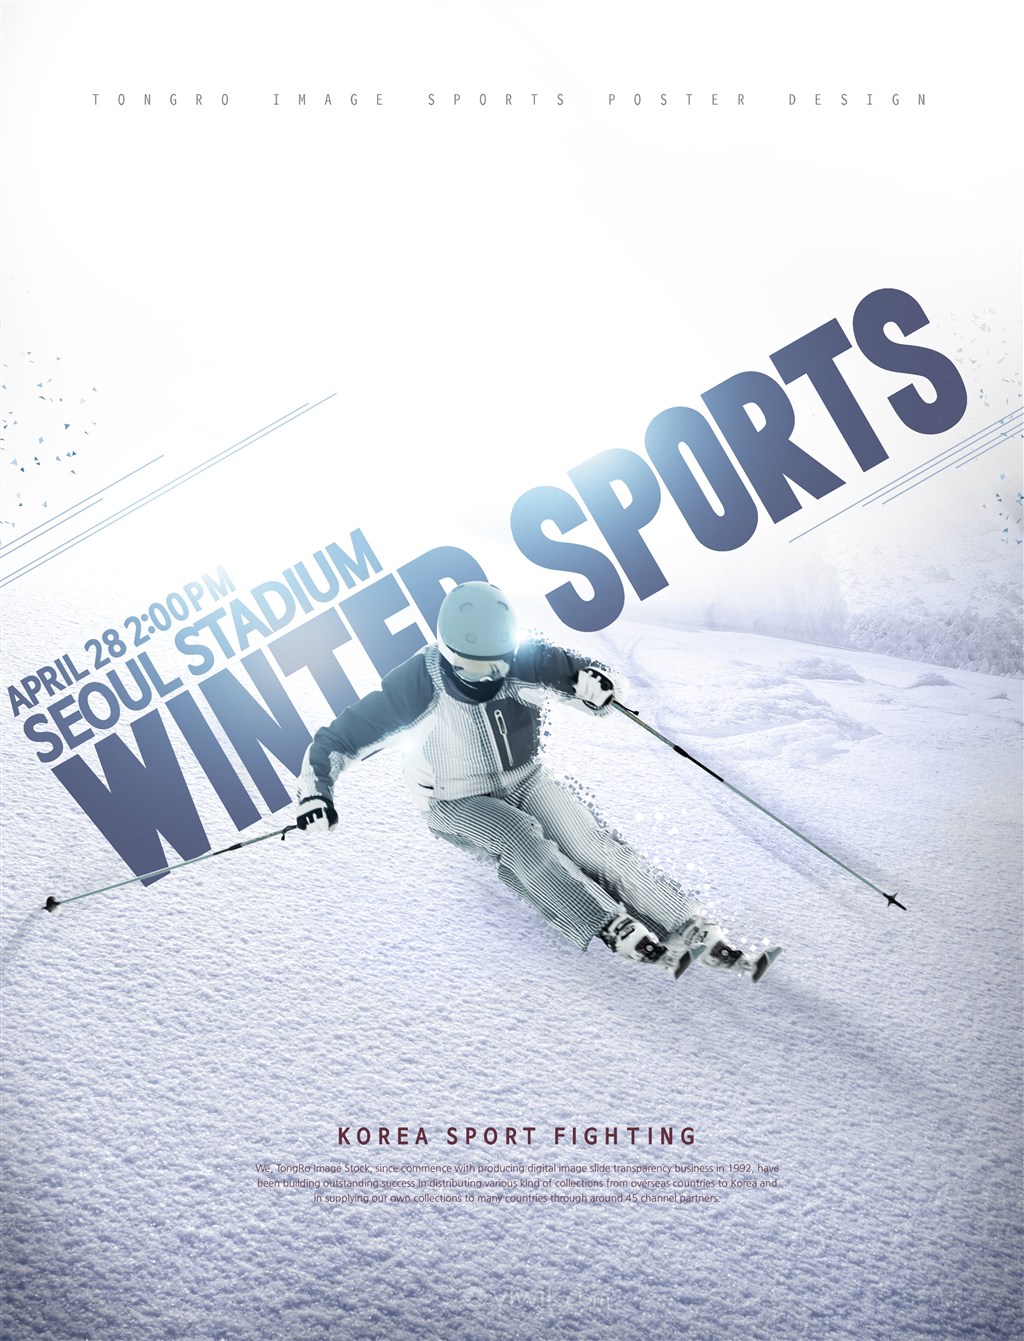 冬季滑雪运动比赛广告海报模板